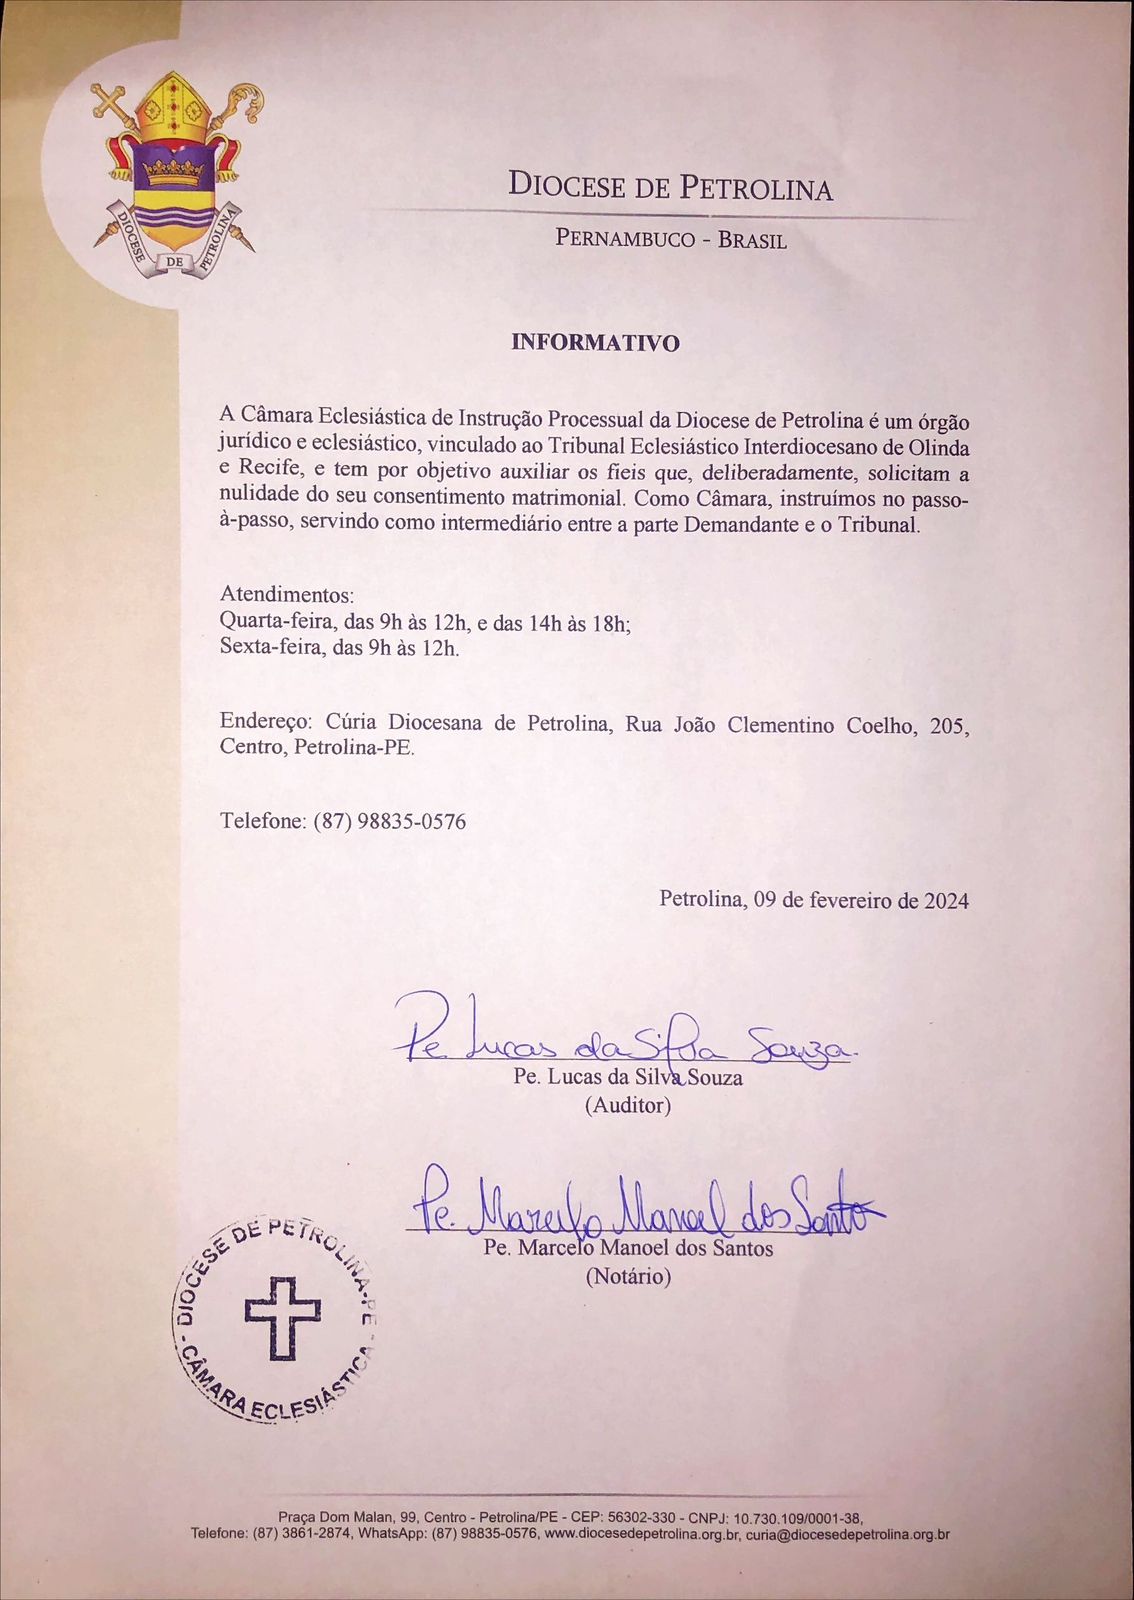 Informativo sobre o funcionamento da Câmara Eclesiástica de Instrução Processual da Diocese de Petrolina